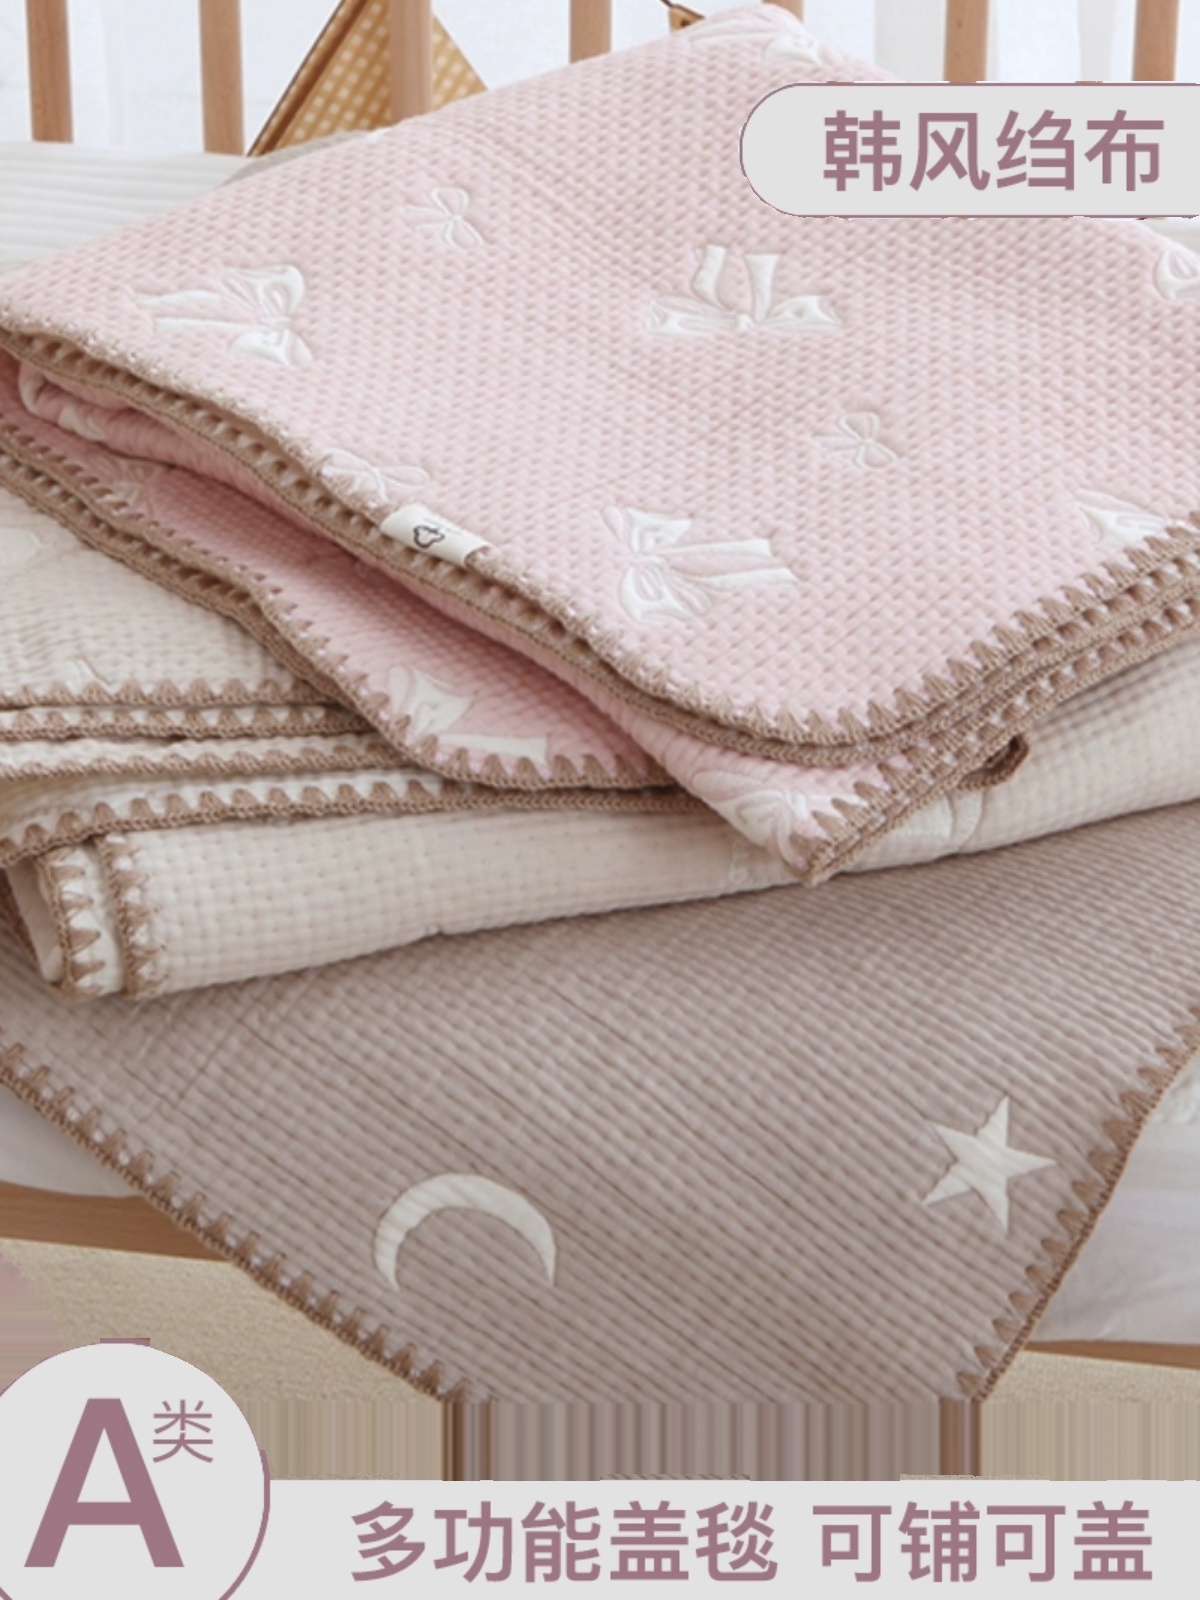 韩国高端婴儿盖毯秋冬宝宝多功能毯子 亲肤幼儿园全棉床单儿童床